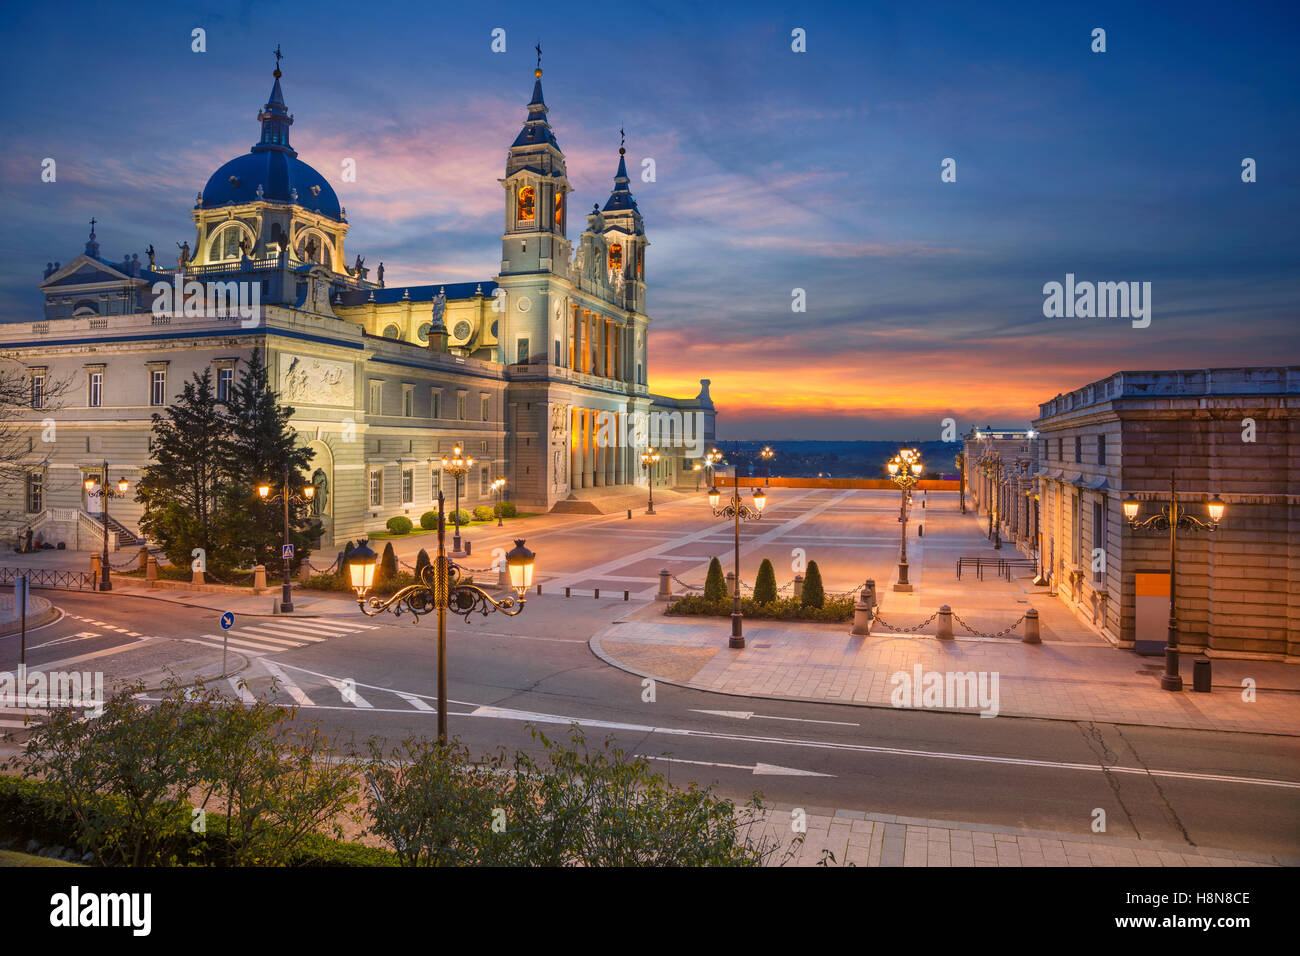 Image de Madrid, Espagne avec Santa Maria la Real de la cathédrale de l'Almudena pendant le coucher du soleil. Banque D'Images